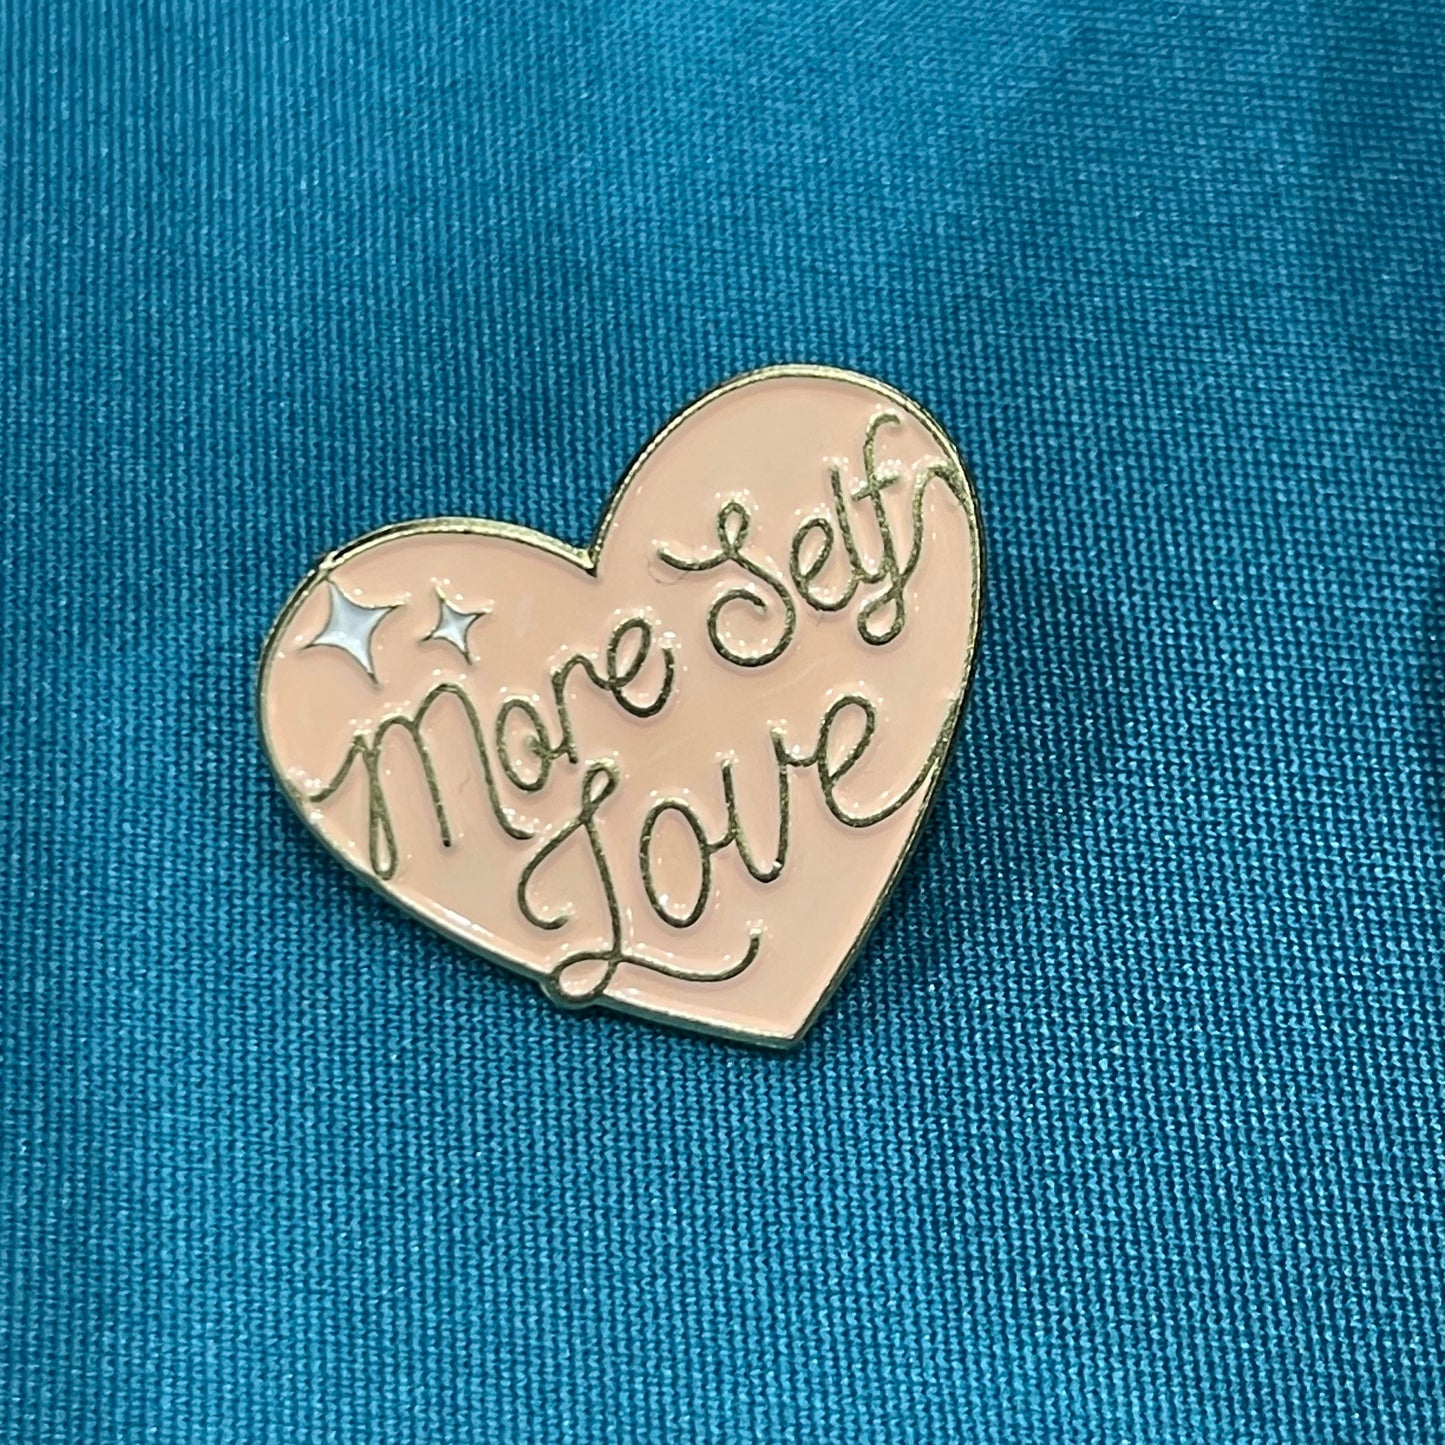 More Self Love - Enamel Pin